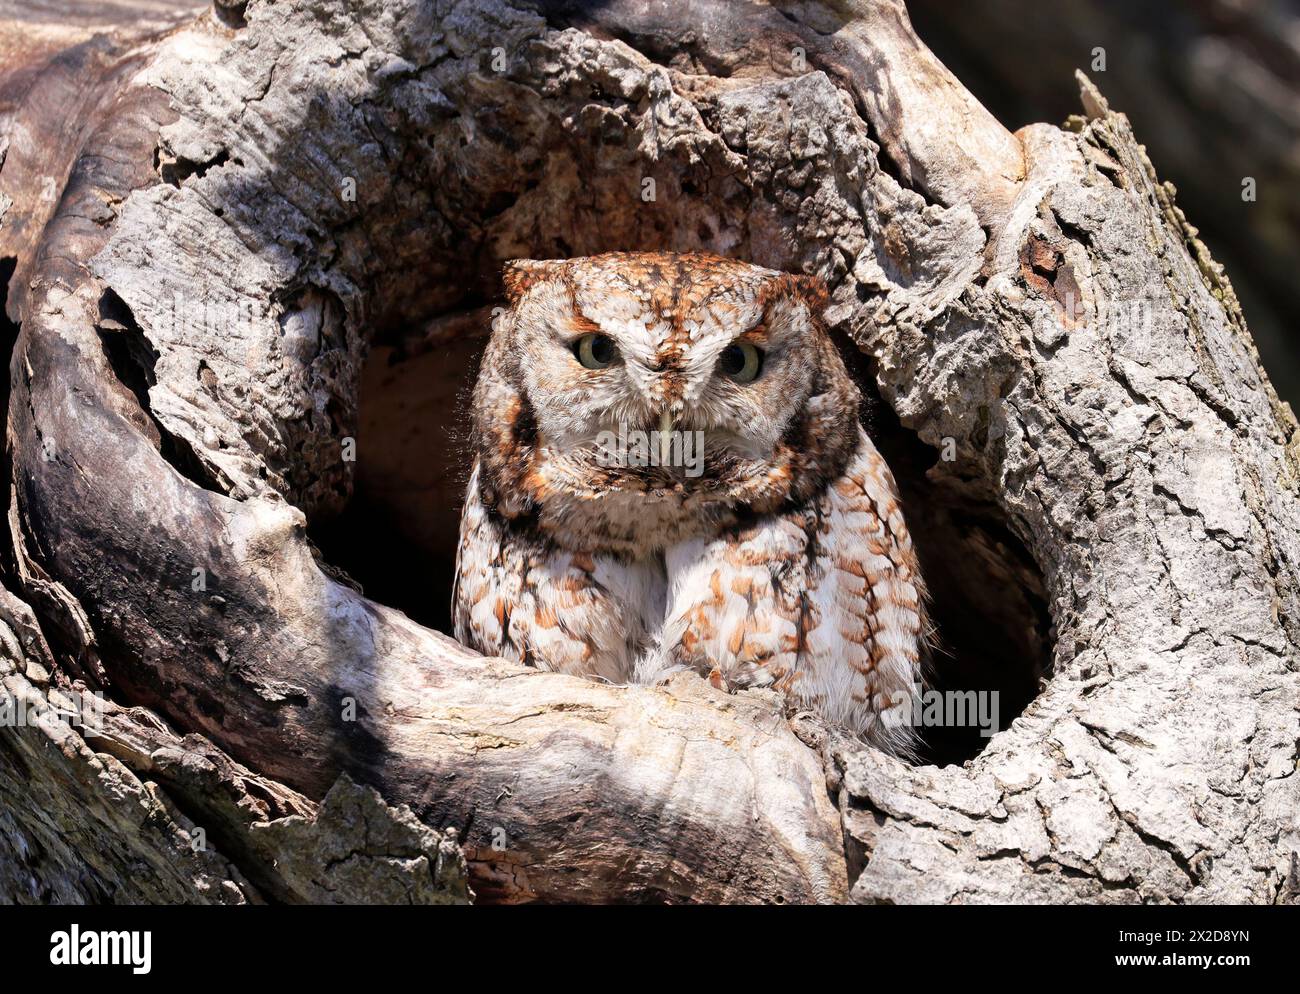 Eastern Screech-Owl assis dans une gouge d'arbres, Canada Banque D'Images